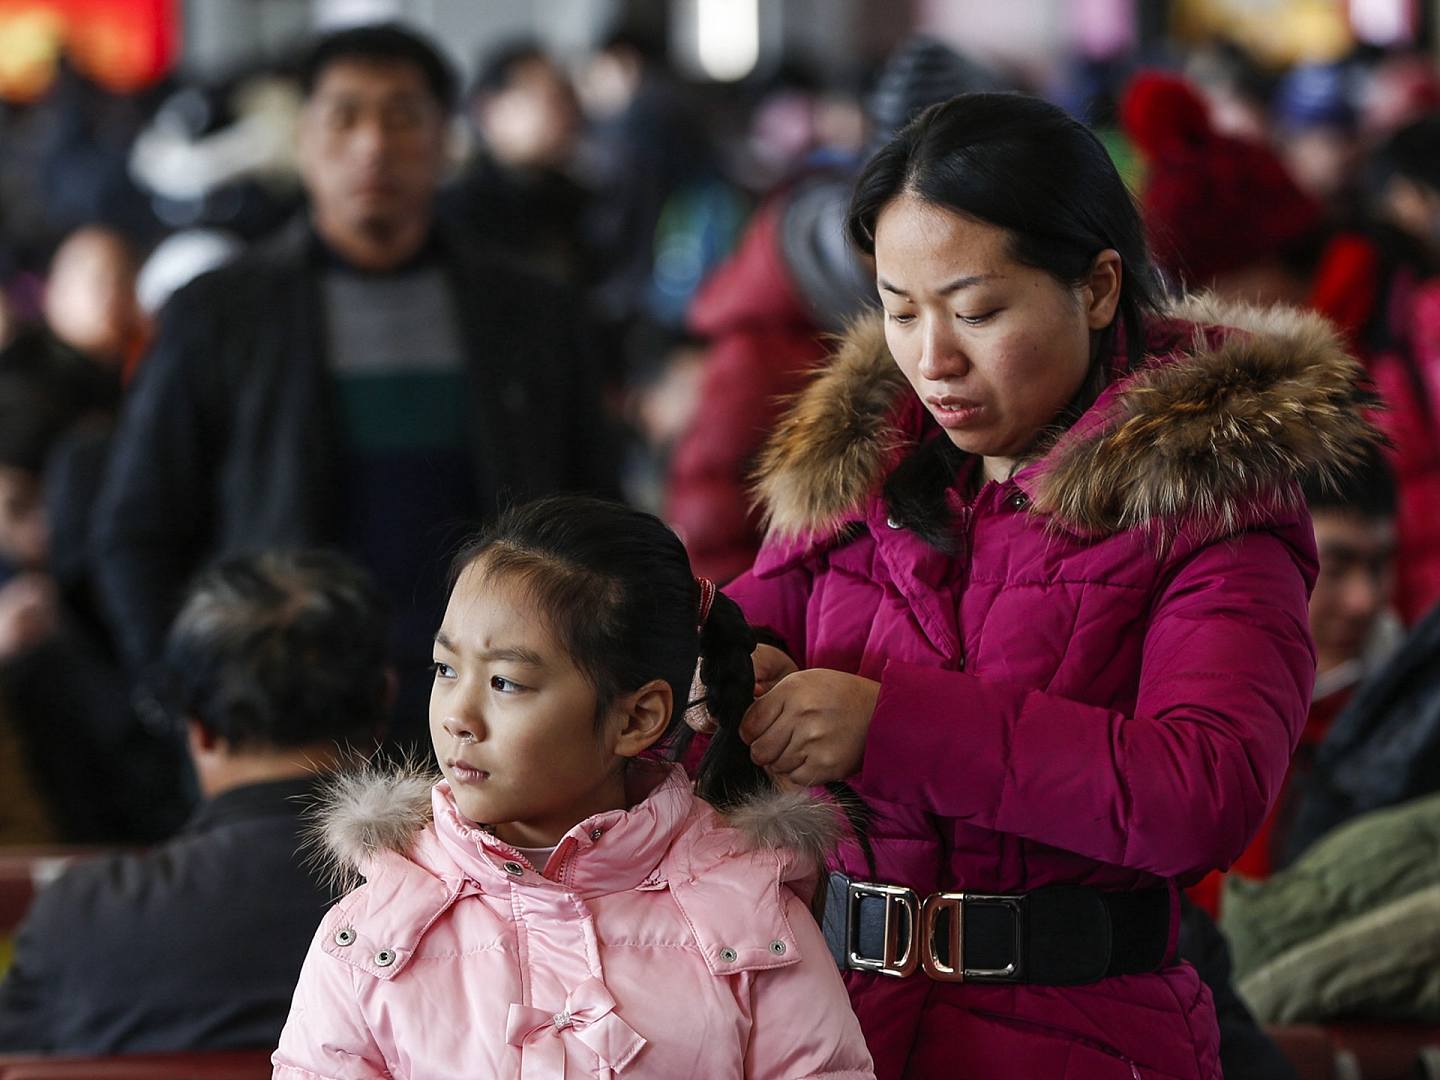 中国长期执行的“计划生育”限制了本国人口增长。（多维新闻网）